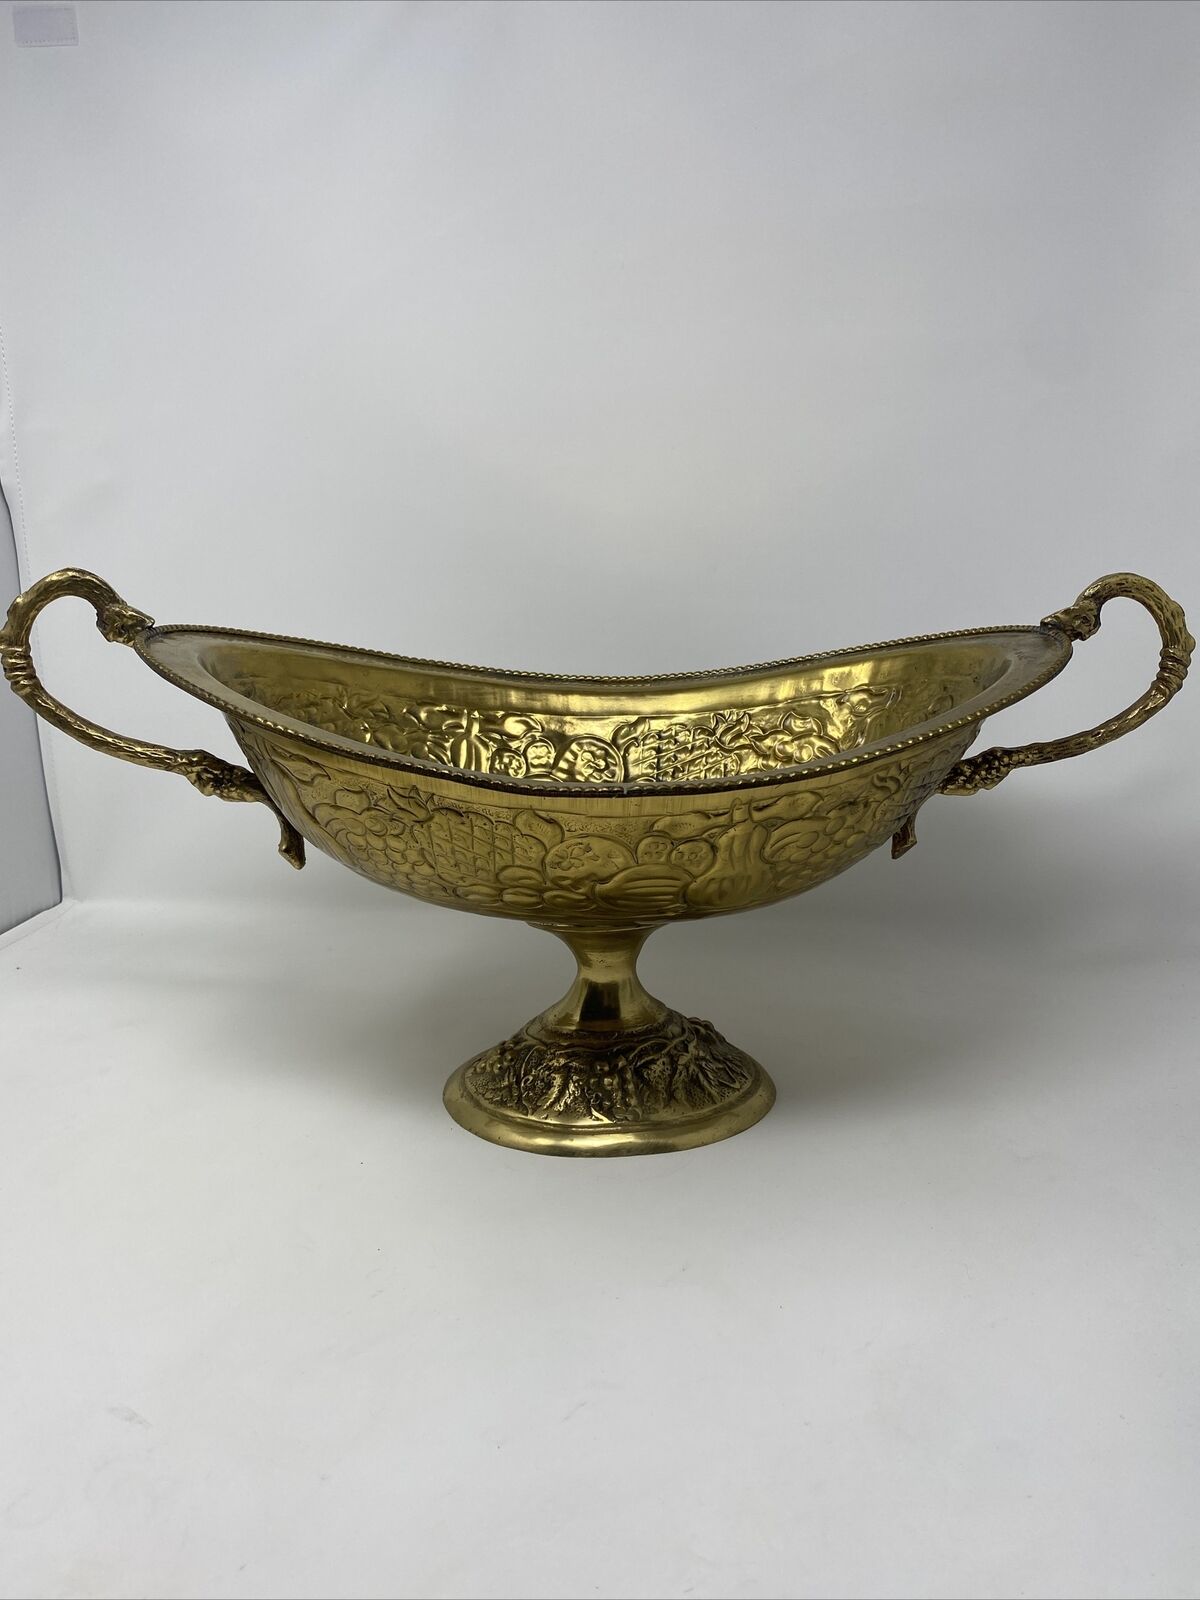 Vintage Mid Century Huge Ornate Brass Bowl With Handles Fruit Design